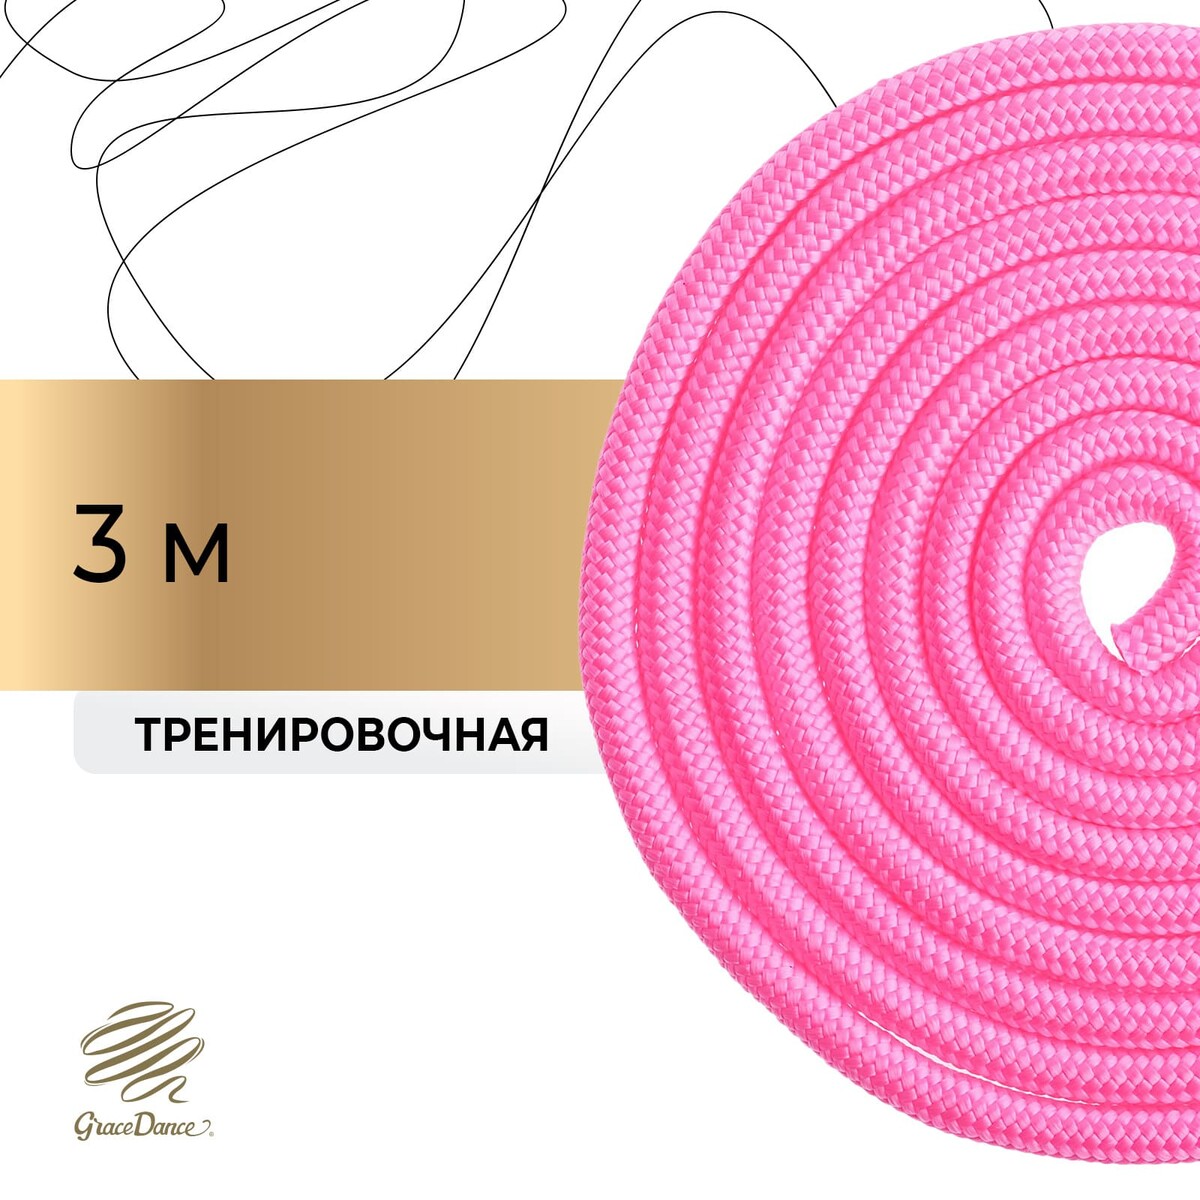 Скакалка для художественной гимнастики grace dance, 3 м, цвет розовый скакалка jump rope розовый 106061